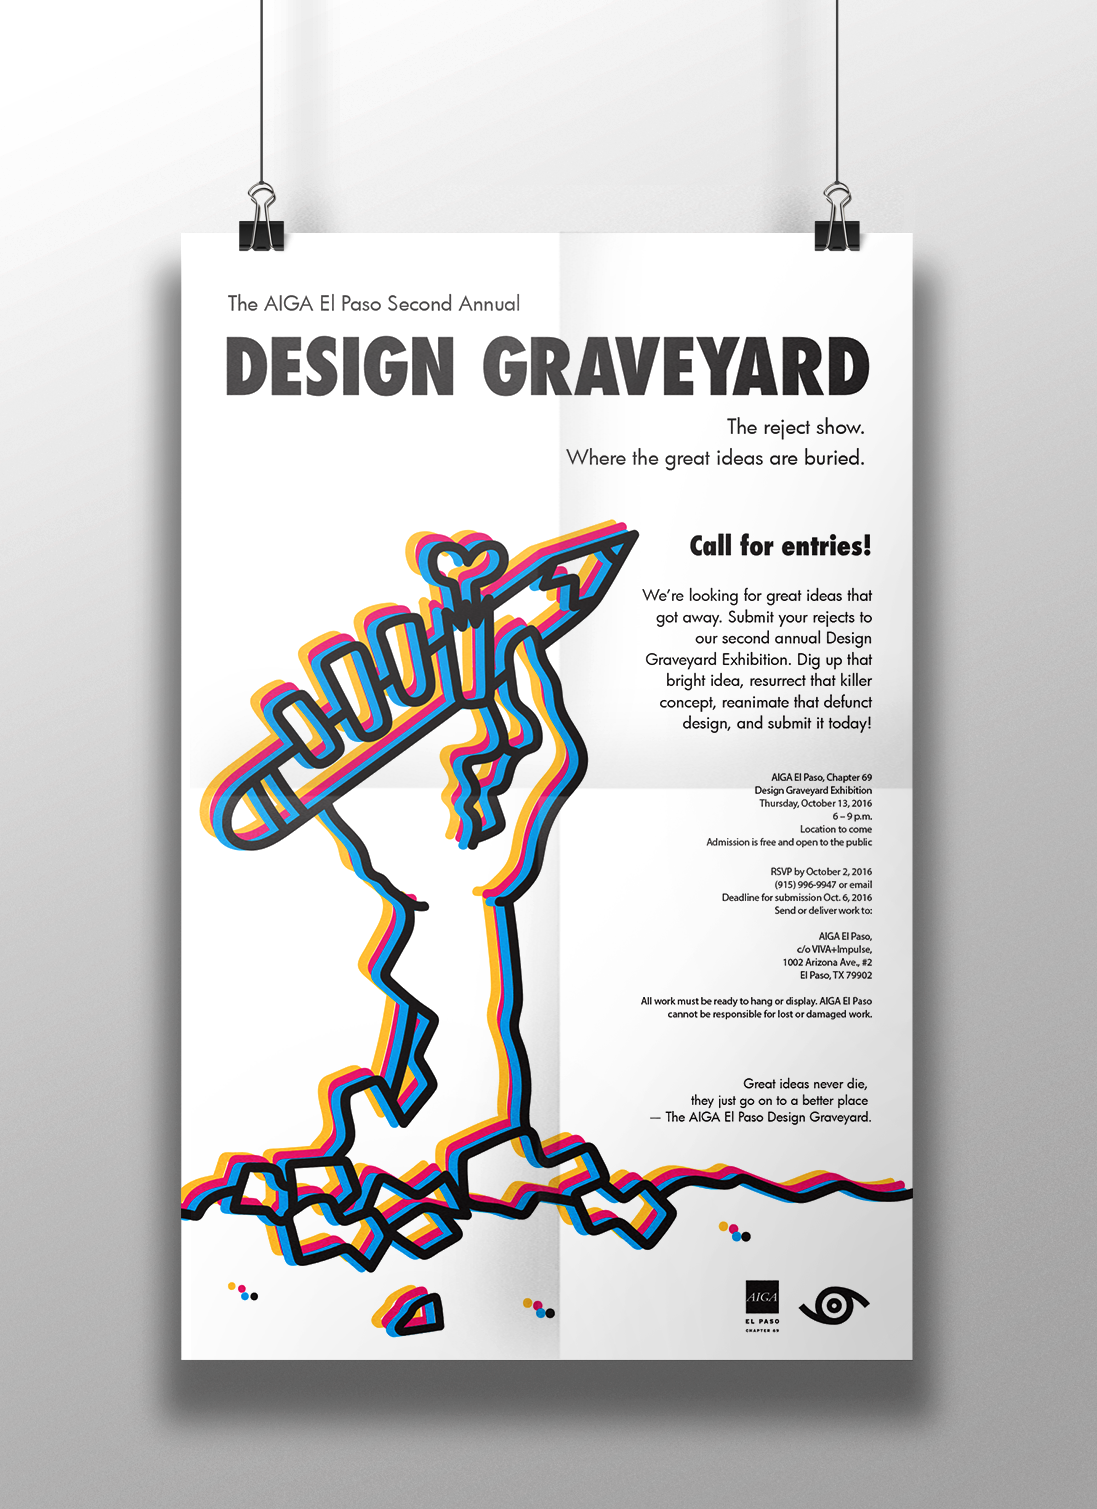  aiga design graveyard poster